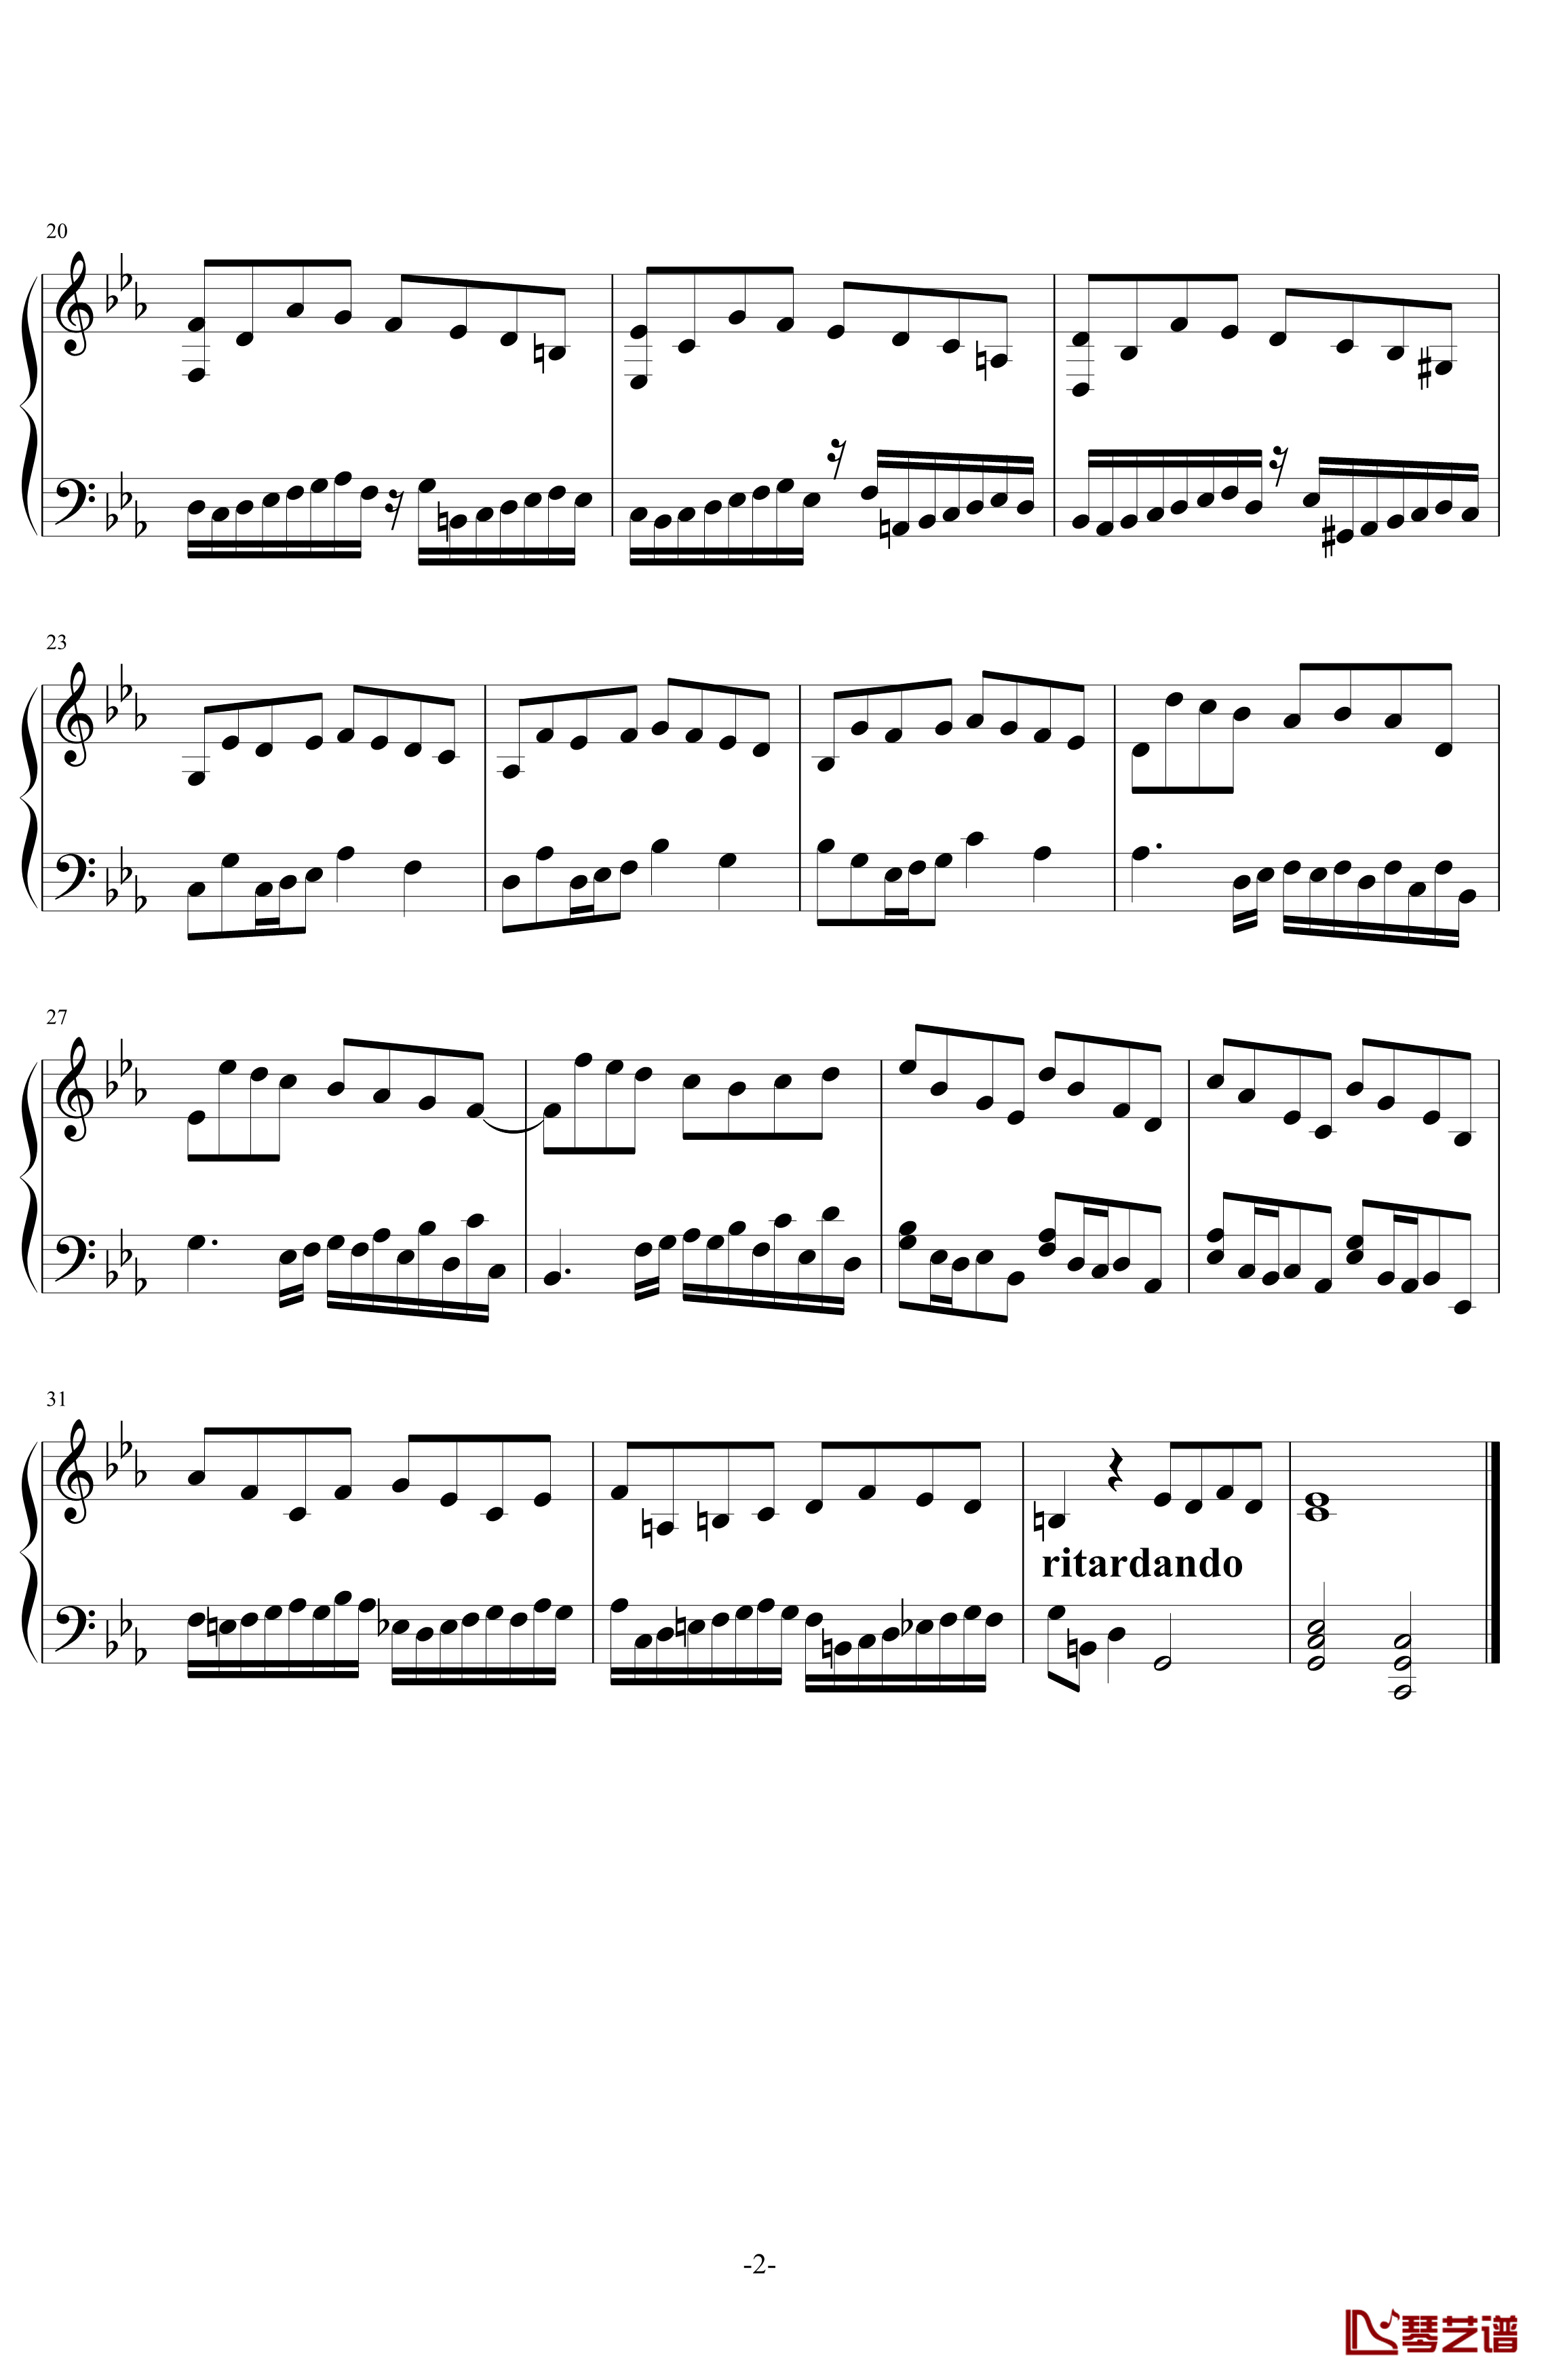 缓音律c小调No.2钢琴谱-初版-舍勒七世2